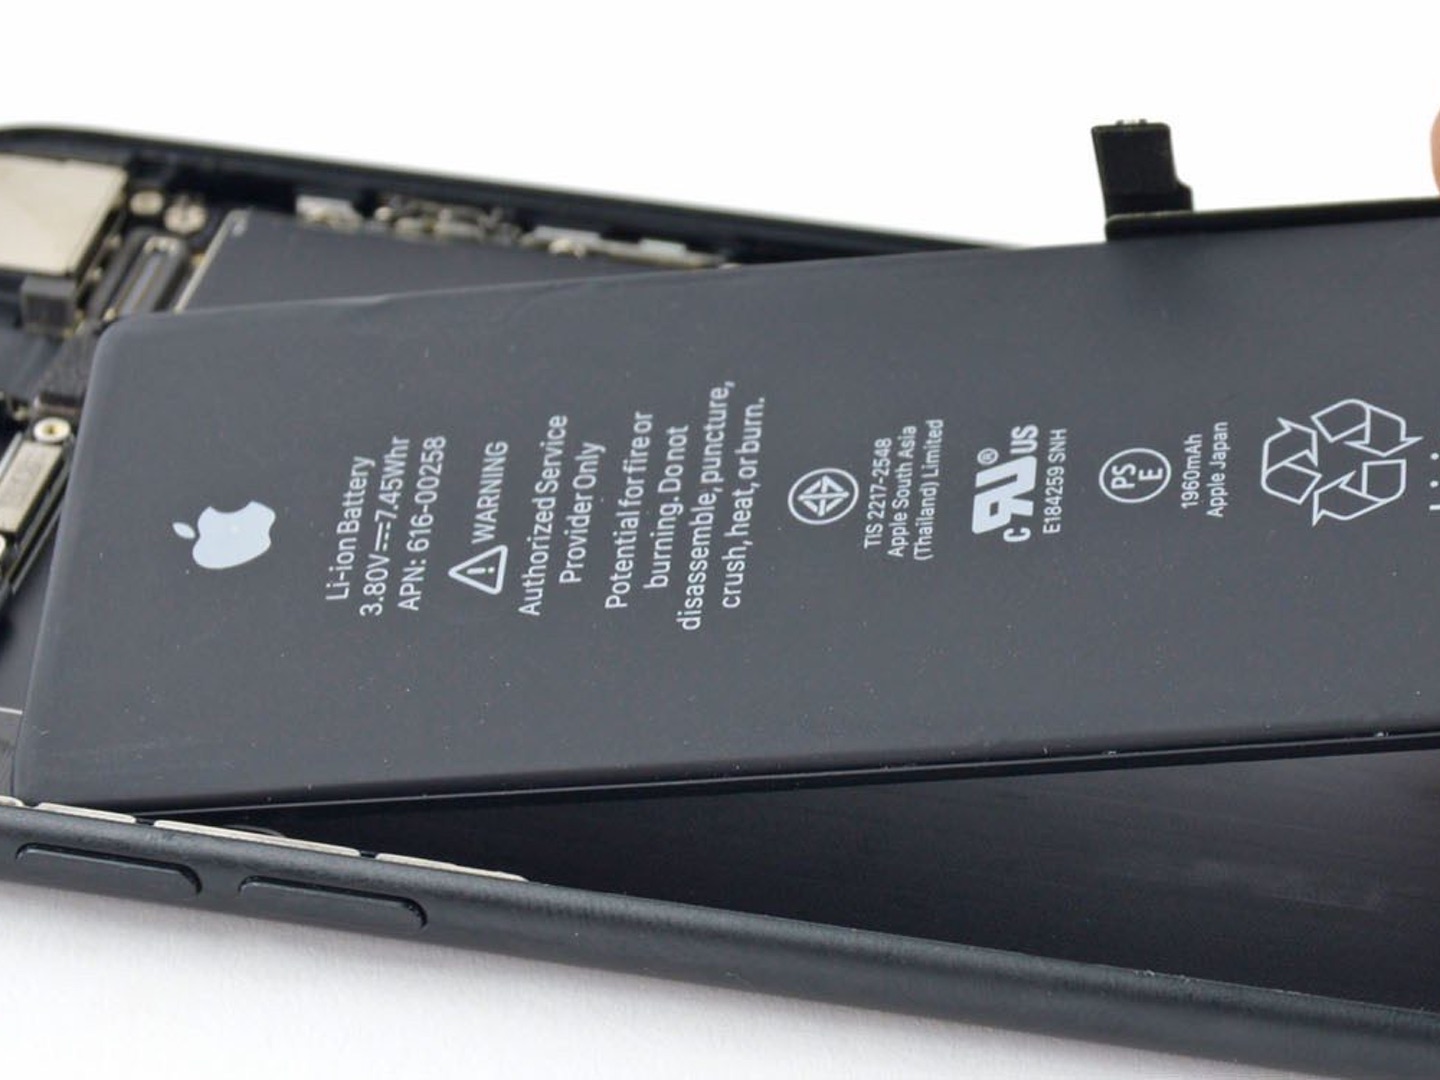 Apple reparará los iPhone aunque incluyan baterías de terceros